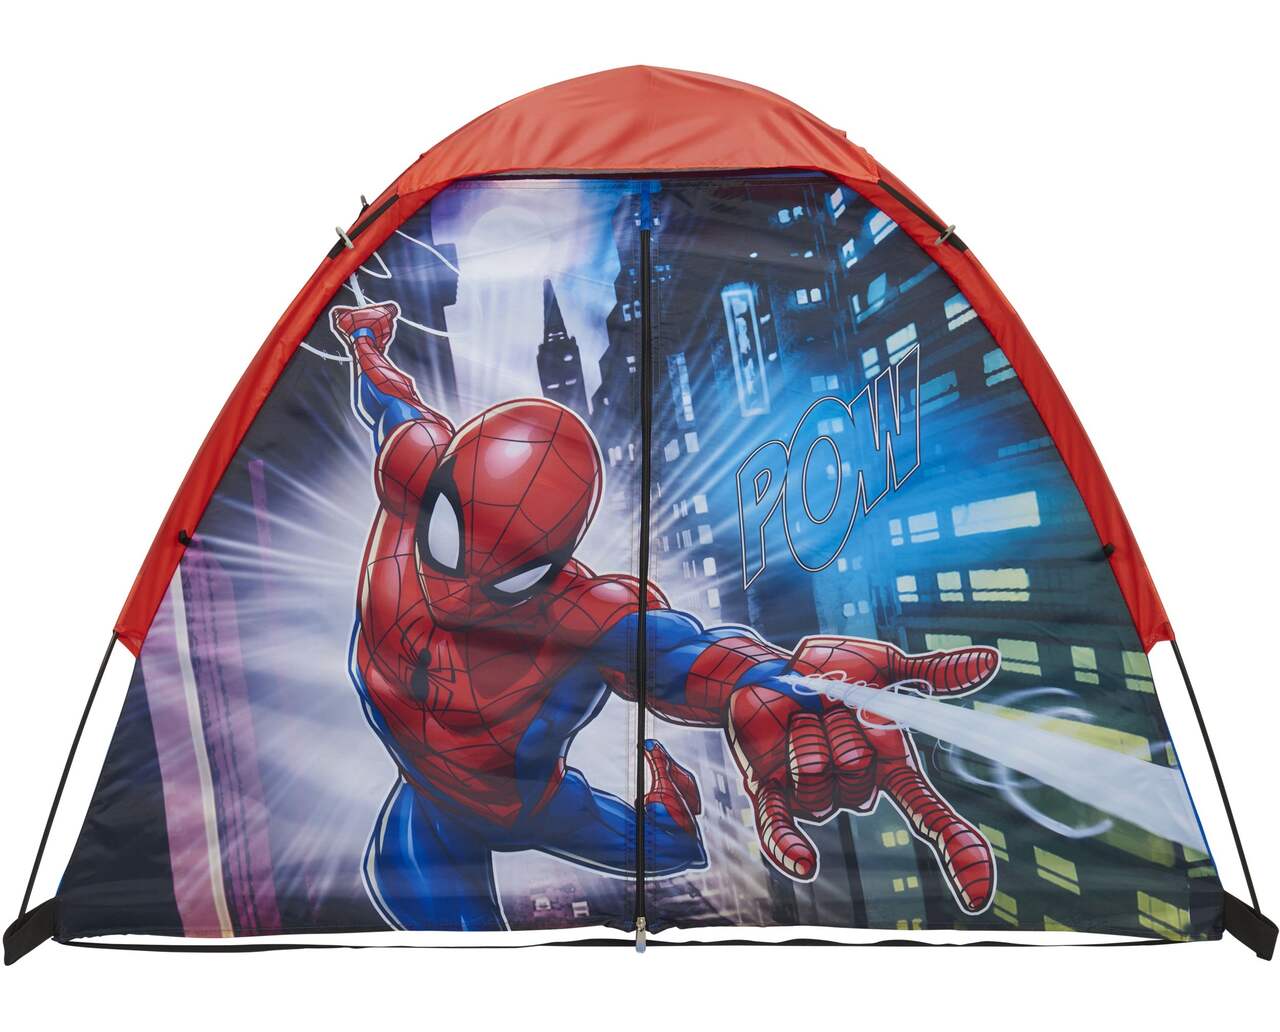 Disney Frozen/Marvel Spiderman Kids' Indoor Pop-Up Play Tent, Assorted